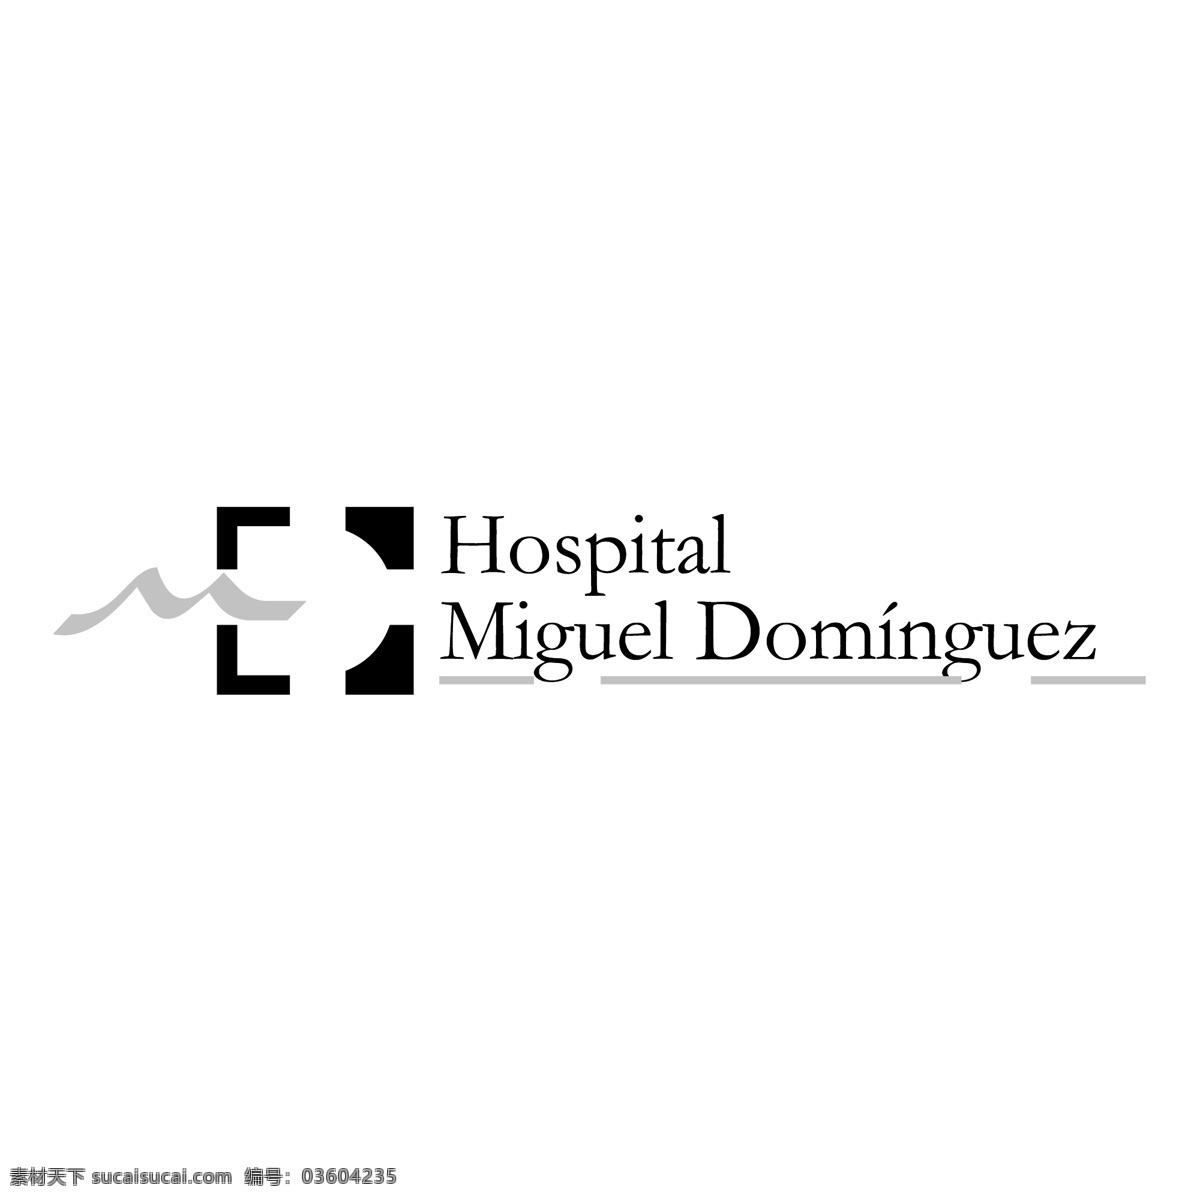 医院 米格尔 明 戈斯 医院形象 医院的米格尔 多明戈斯 医院的图片 免费 矢量 图形 图像 艺术 自由 建筑家居